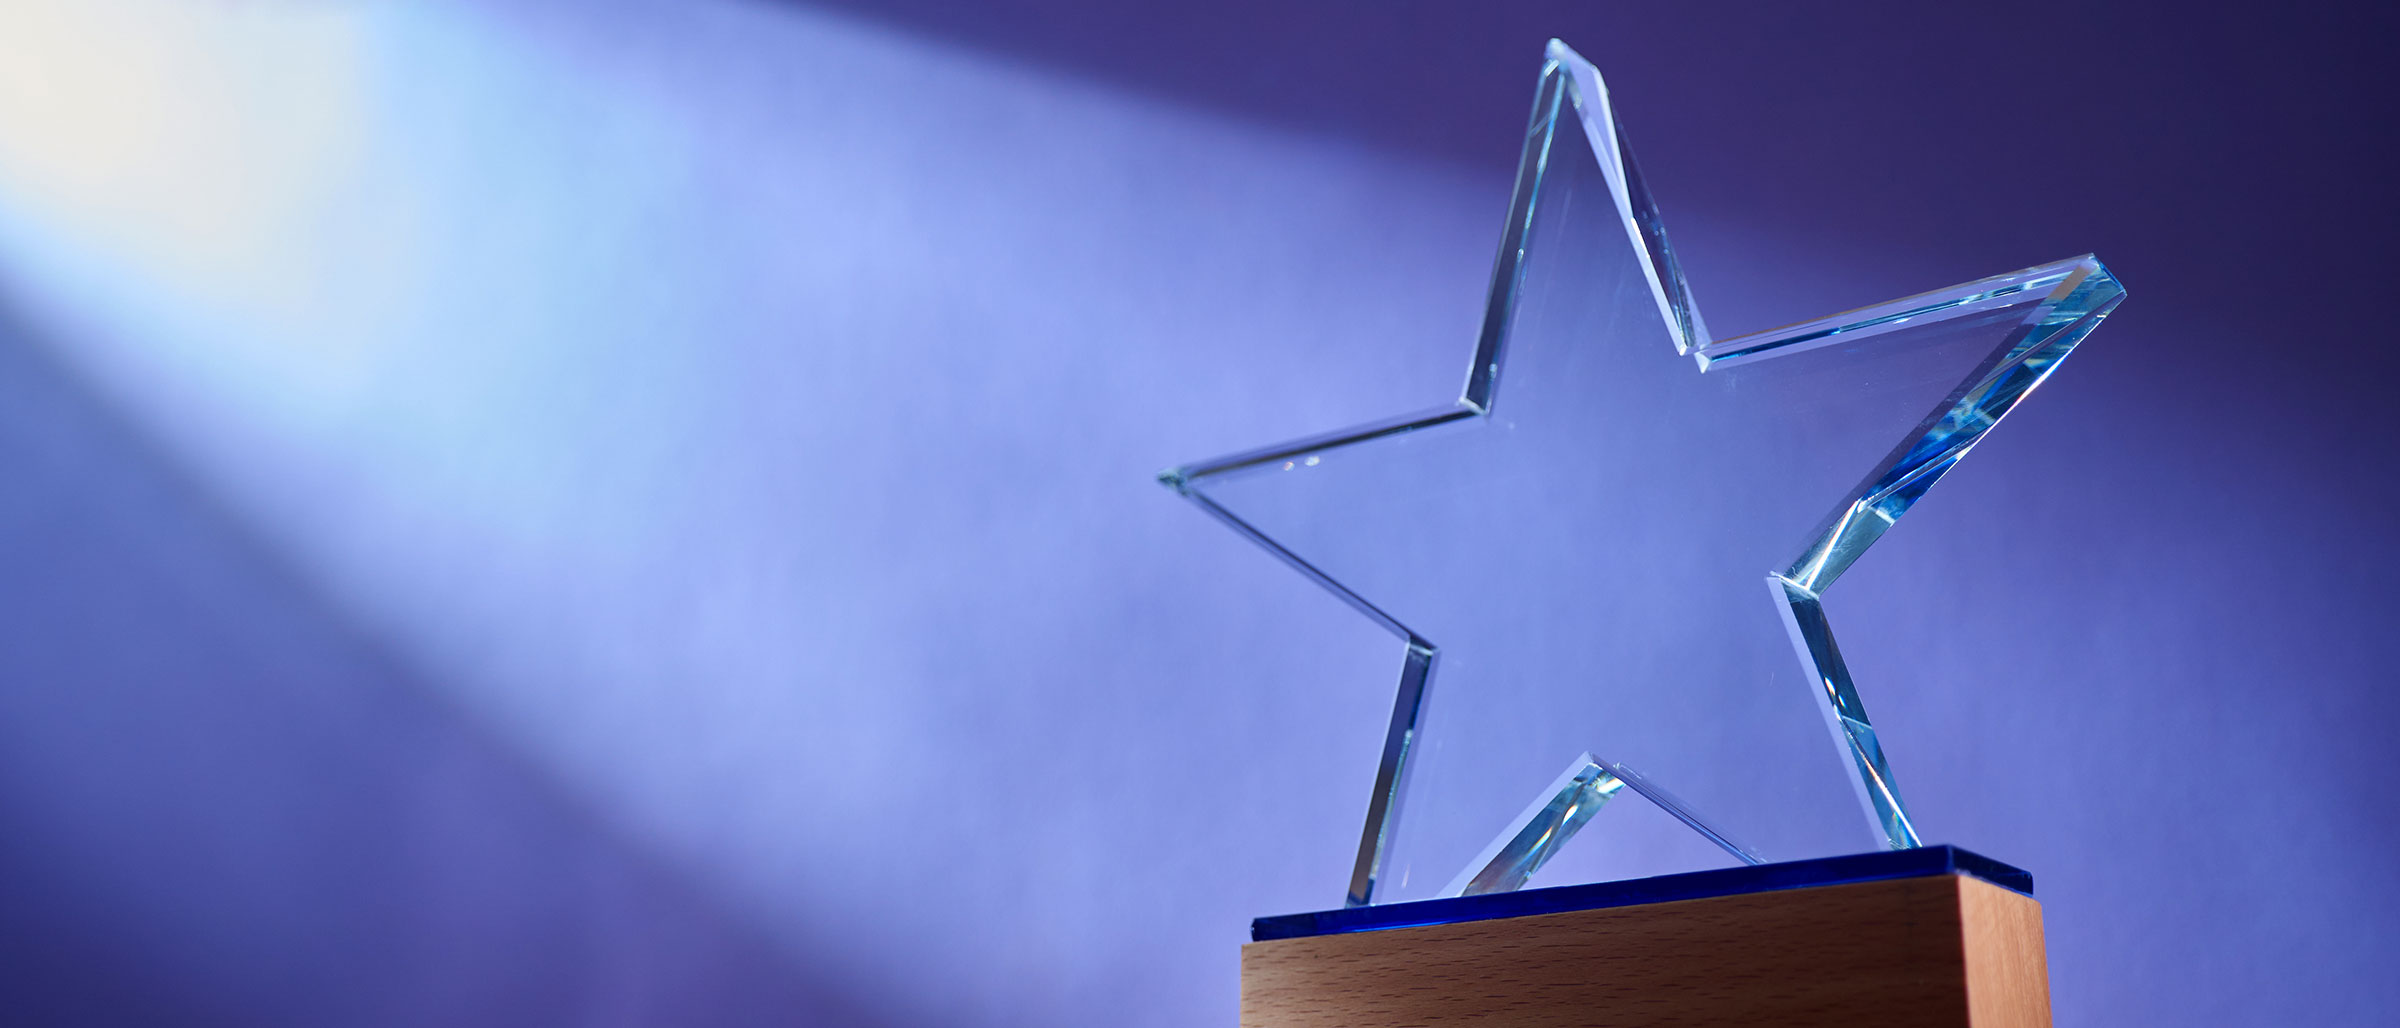 Glass Star Award